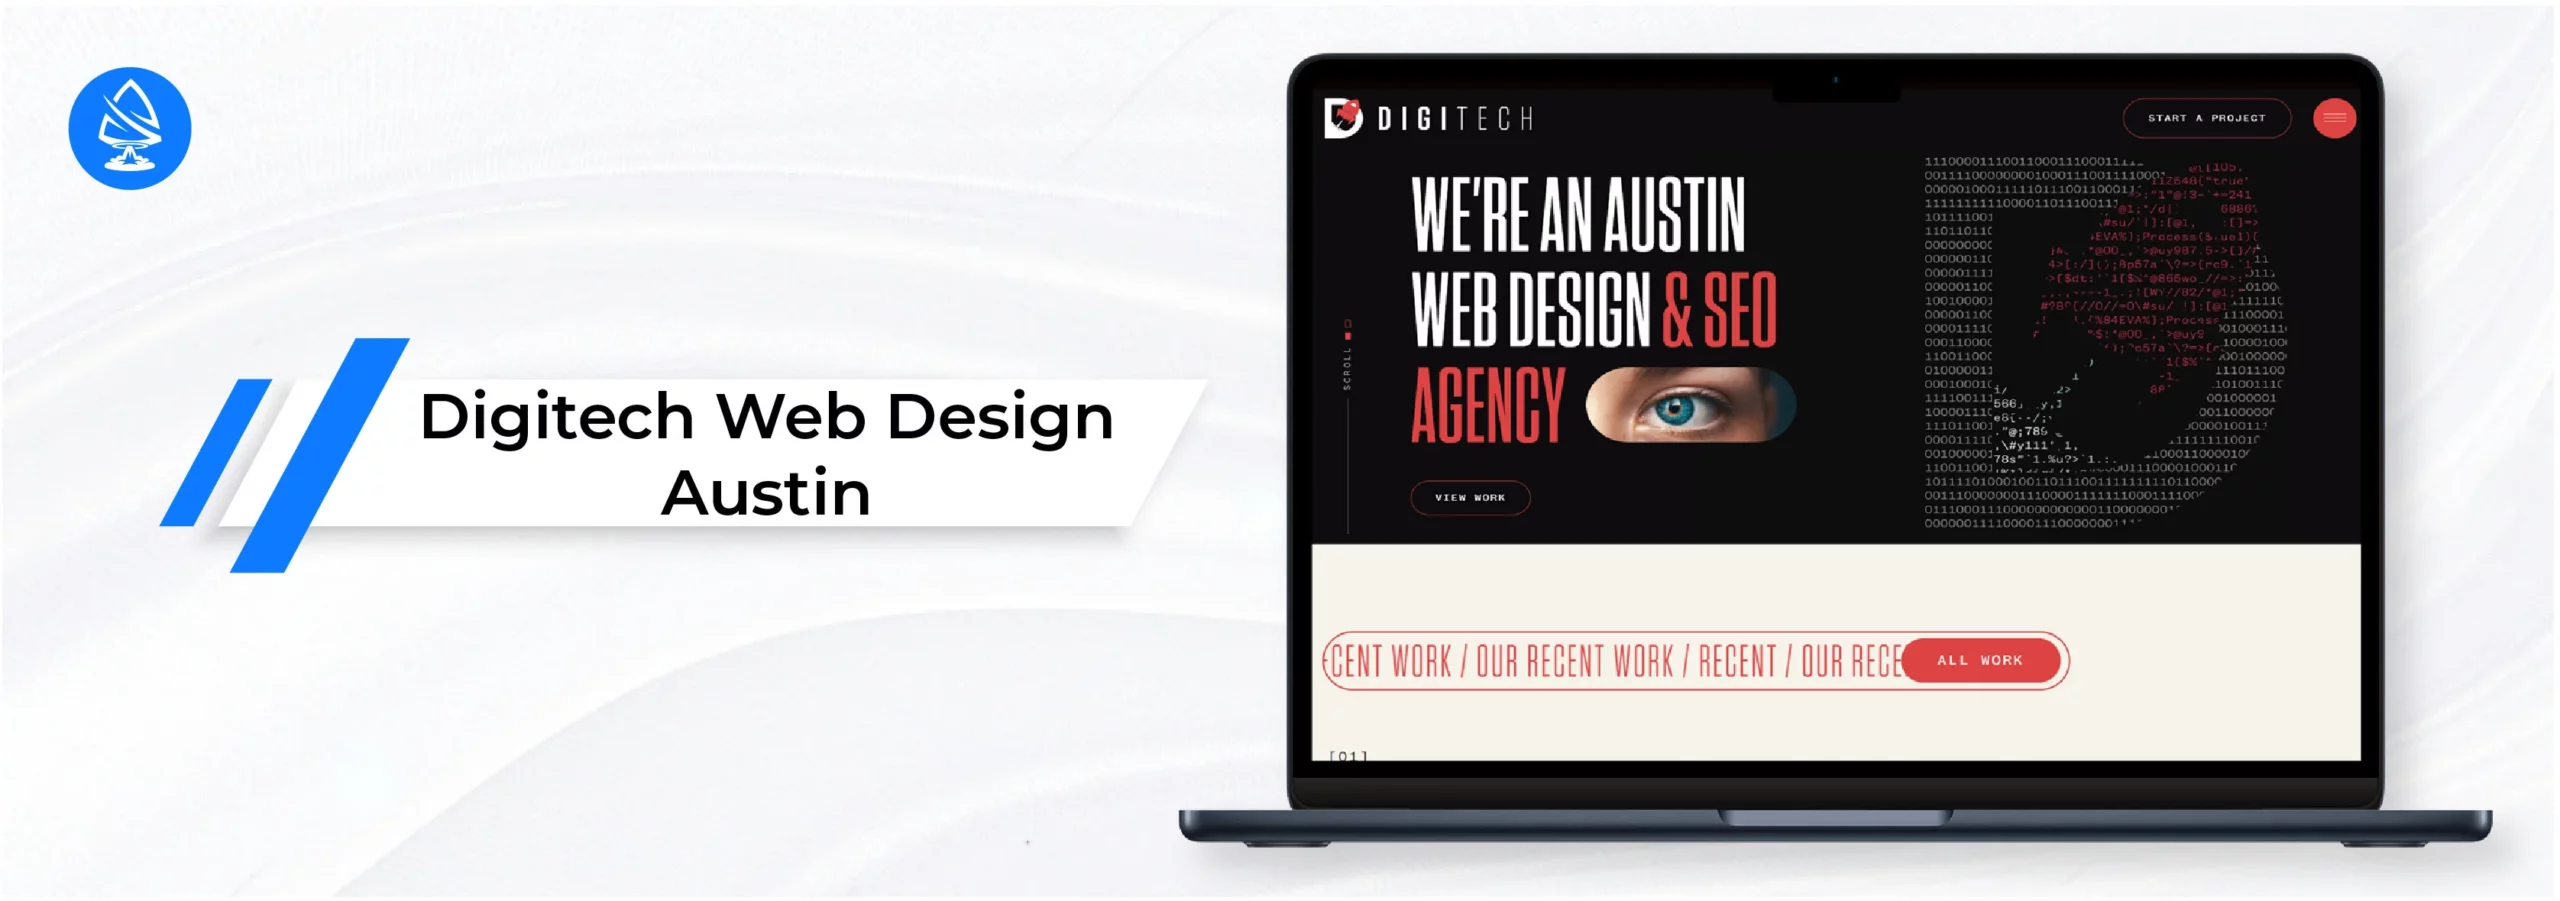 wordpress website design agencies